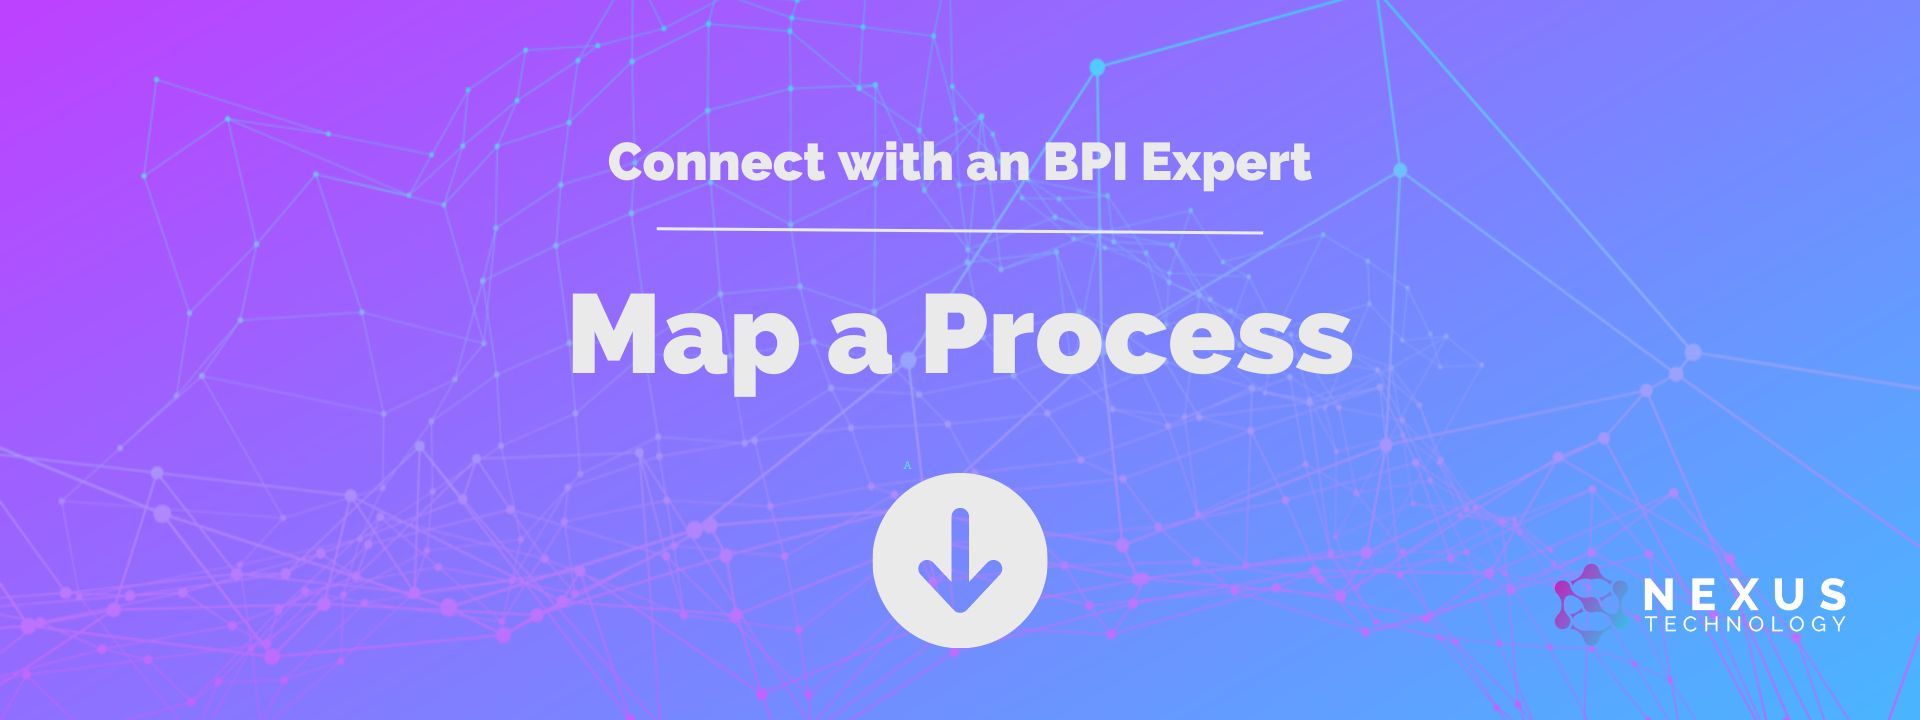 Map a Process